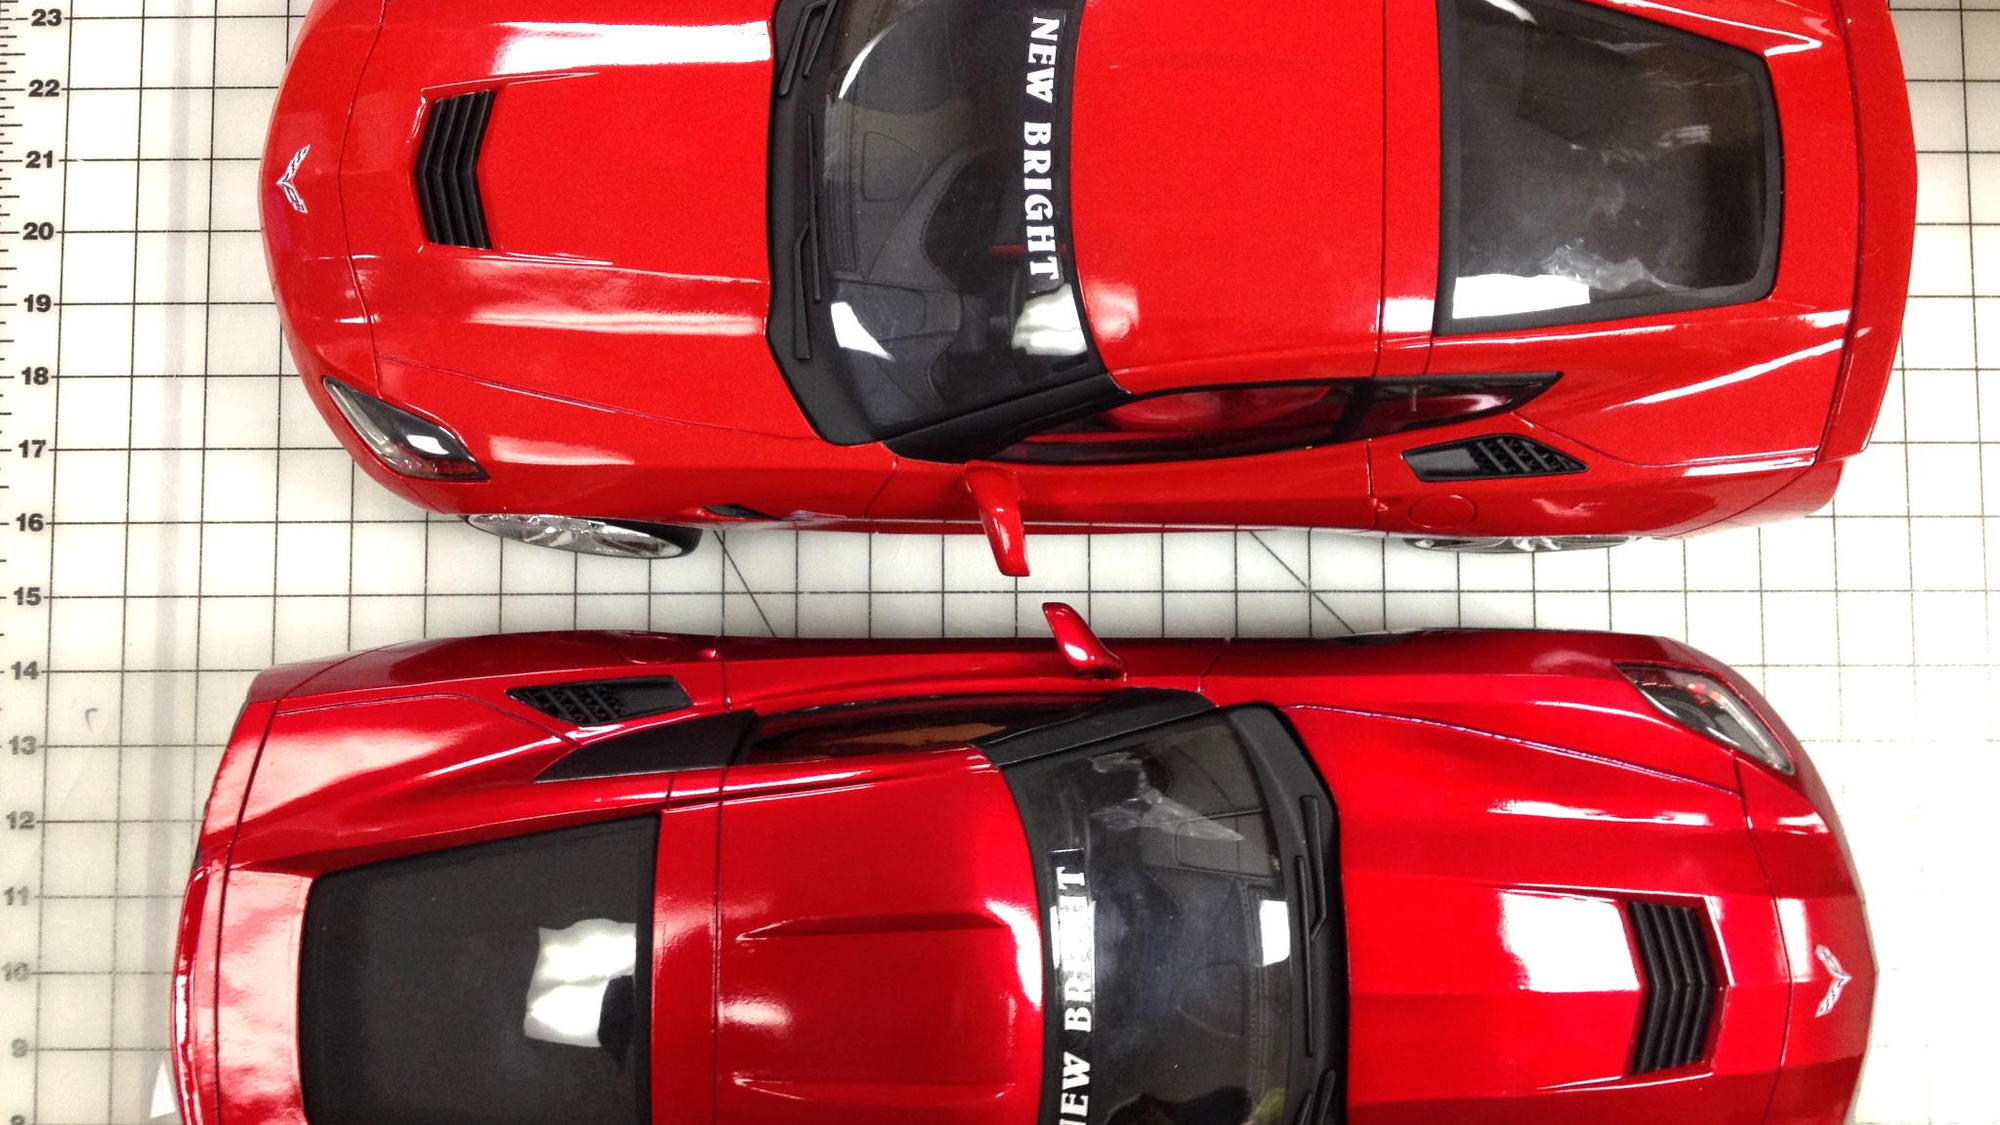 New Bright's 1/8 scale, radio-controlled 2014 Corvette Singray - image: New Bright